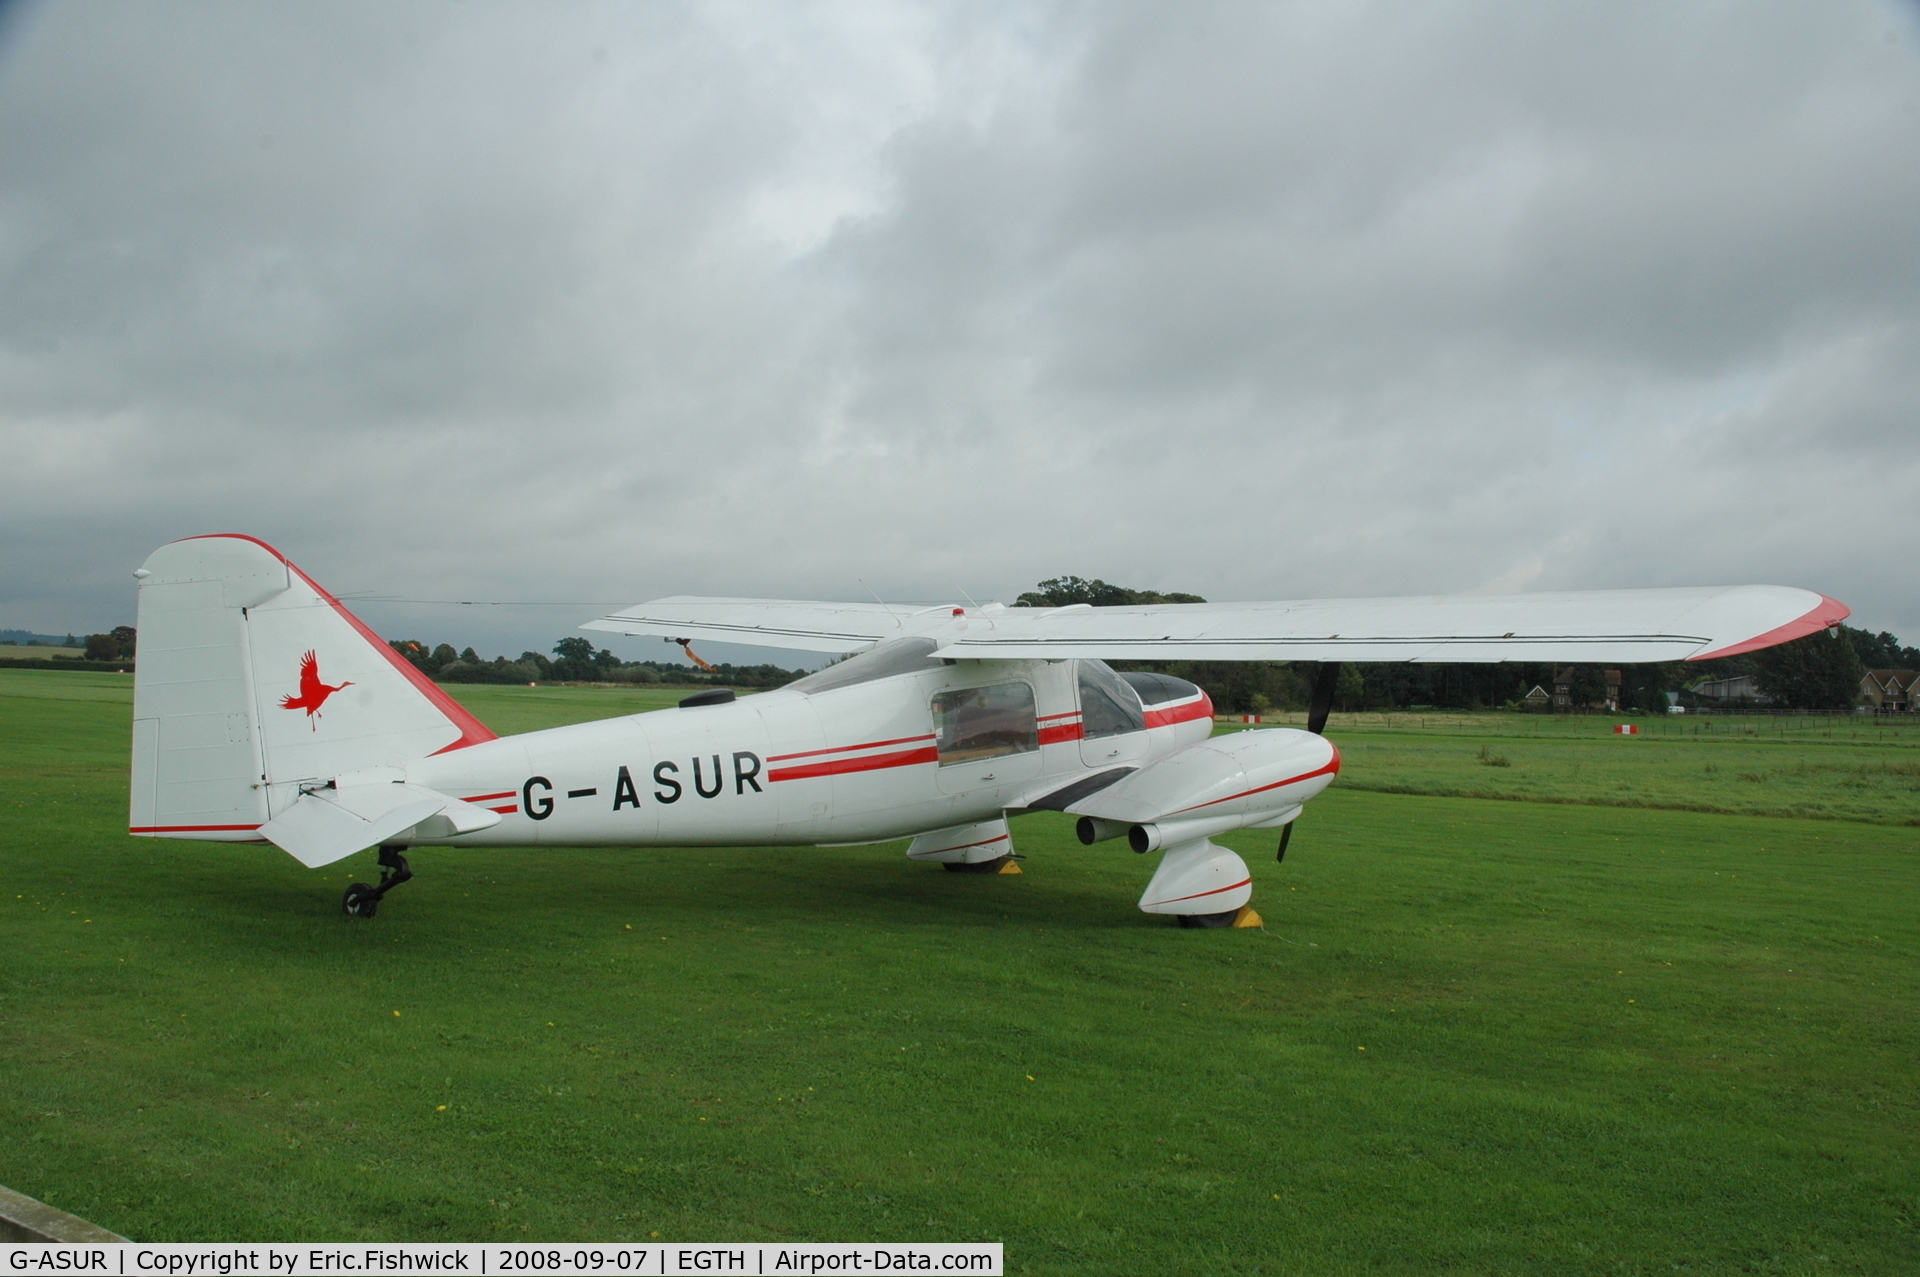 G-ASUR, 1964 Dornier Do-28A-1 C/N 3051, 2. G-ASUR at Shuttleworth Pagent Air Display 07 Sep 08